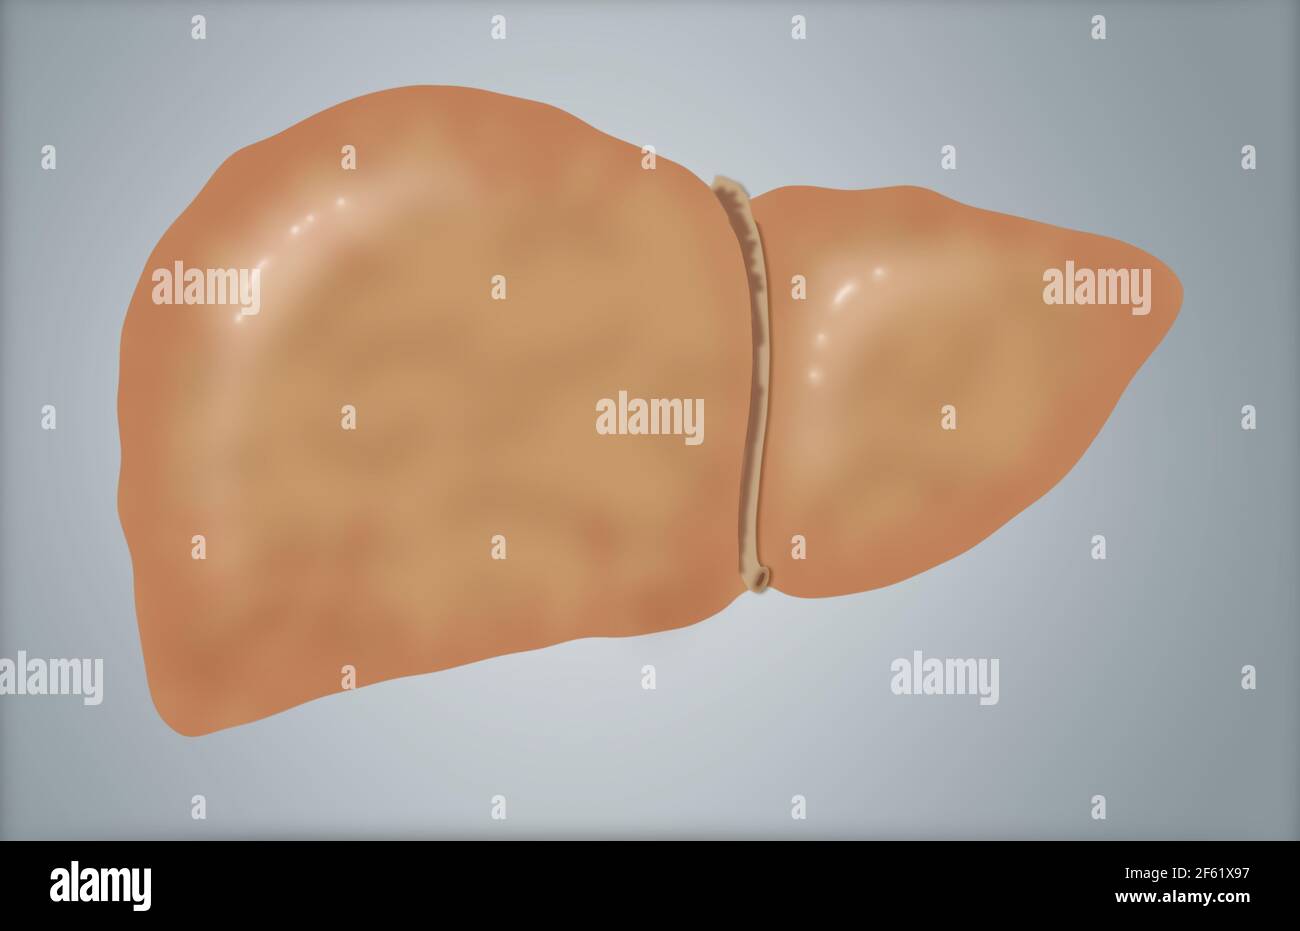 Illustrazione di fegato grasso Foto Stock